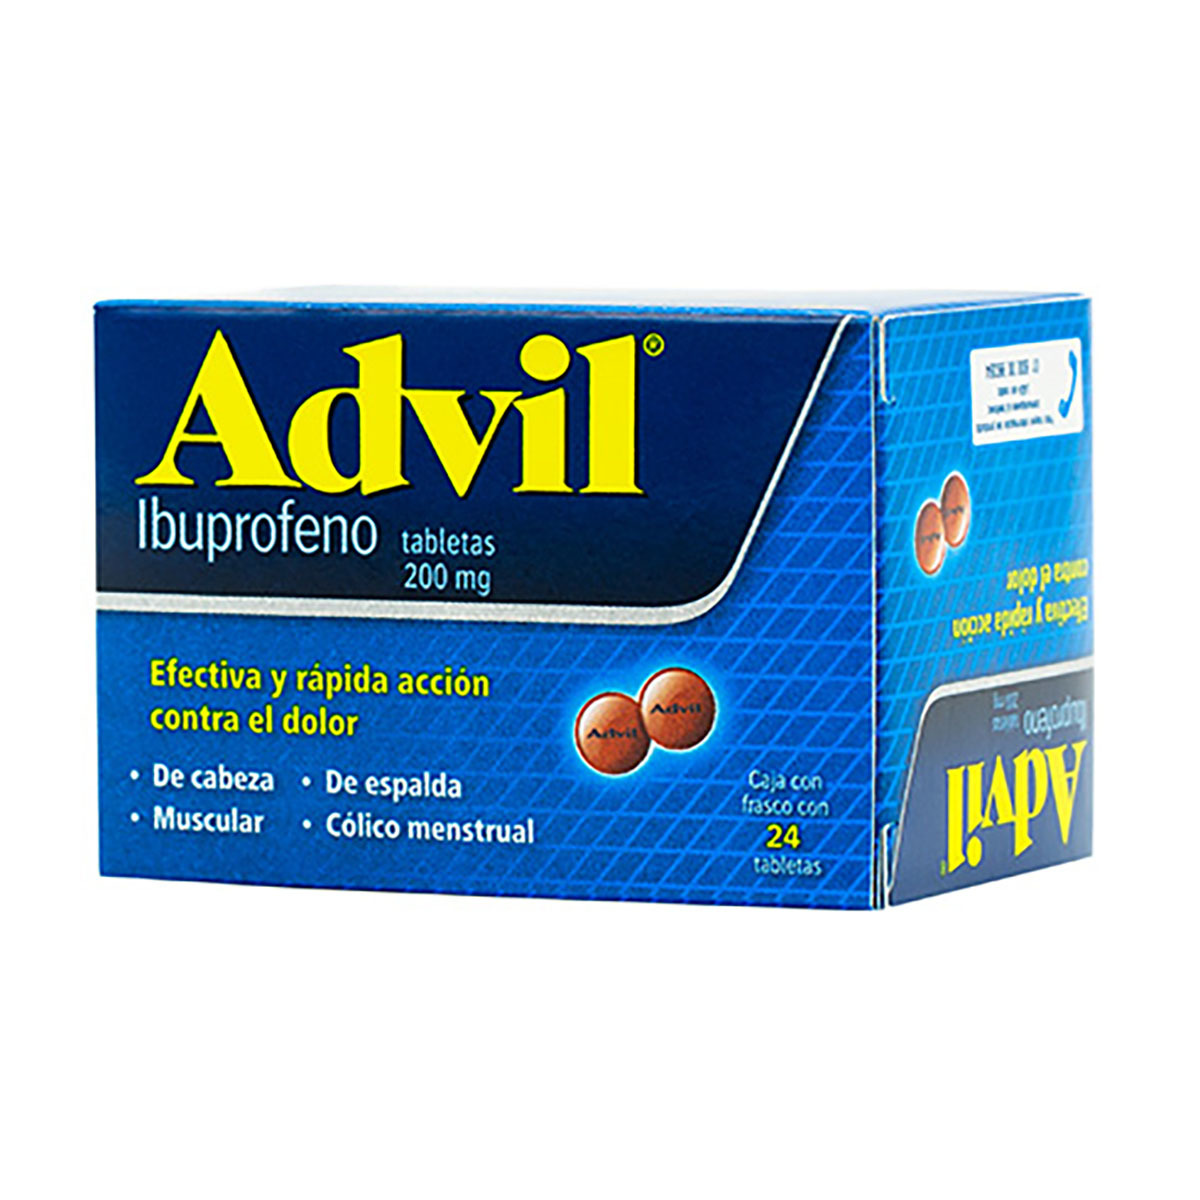 Advil: ¿Qué es y cuánto cuesta?